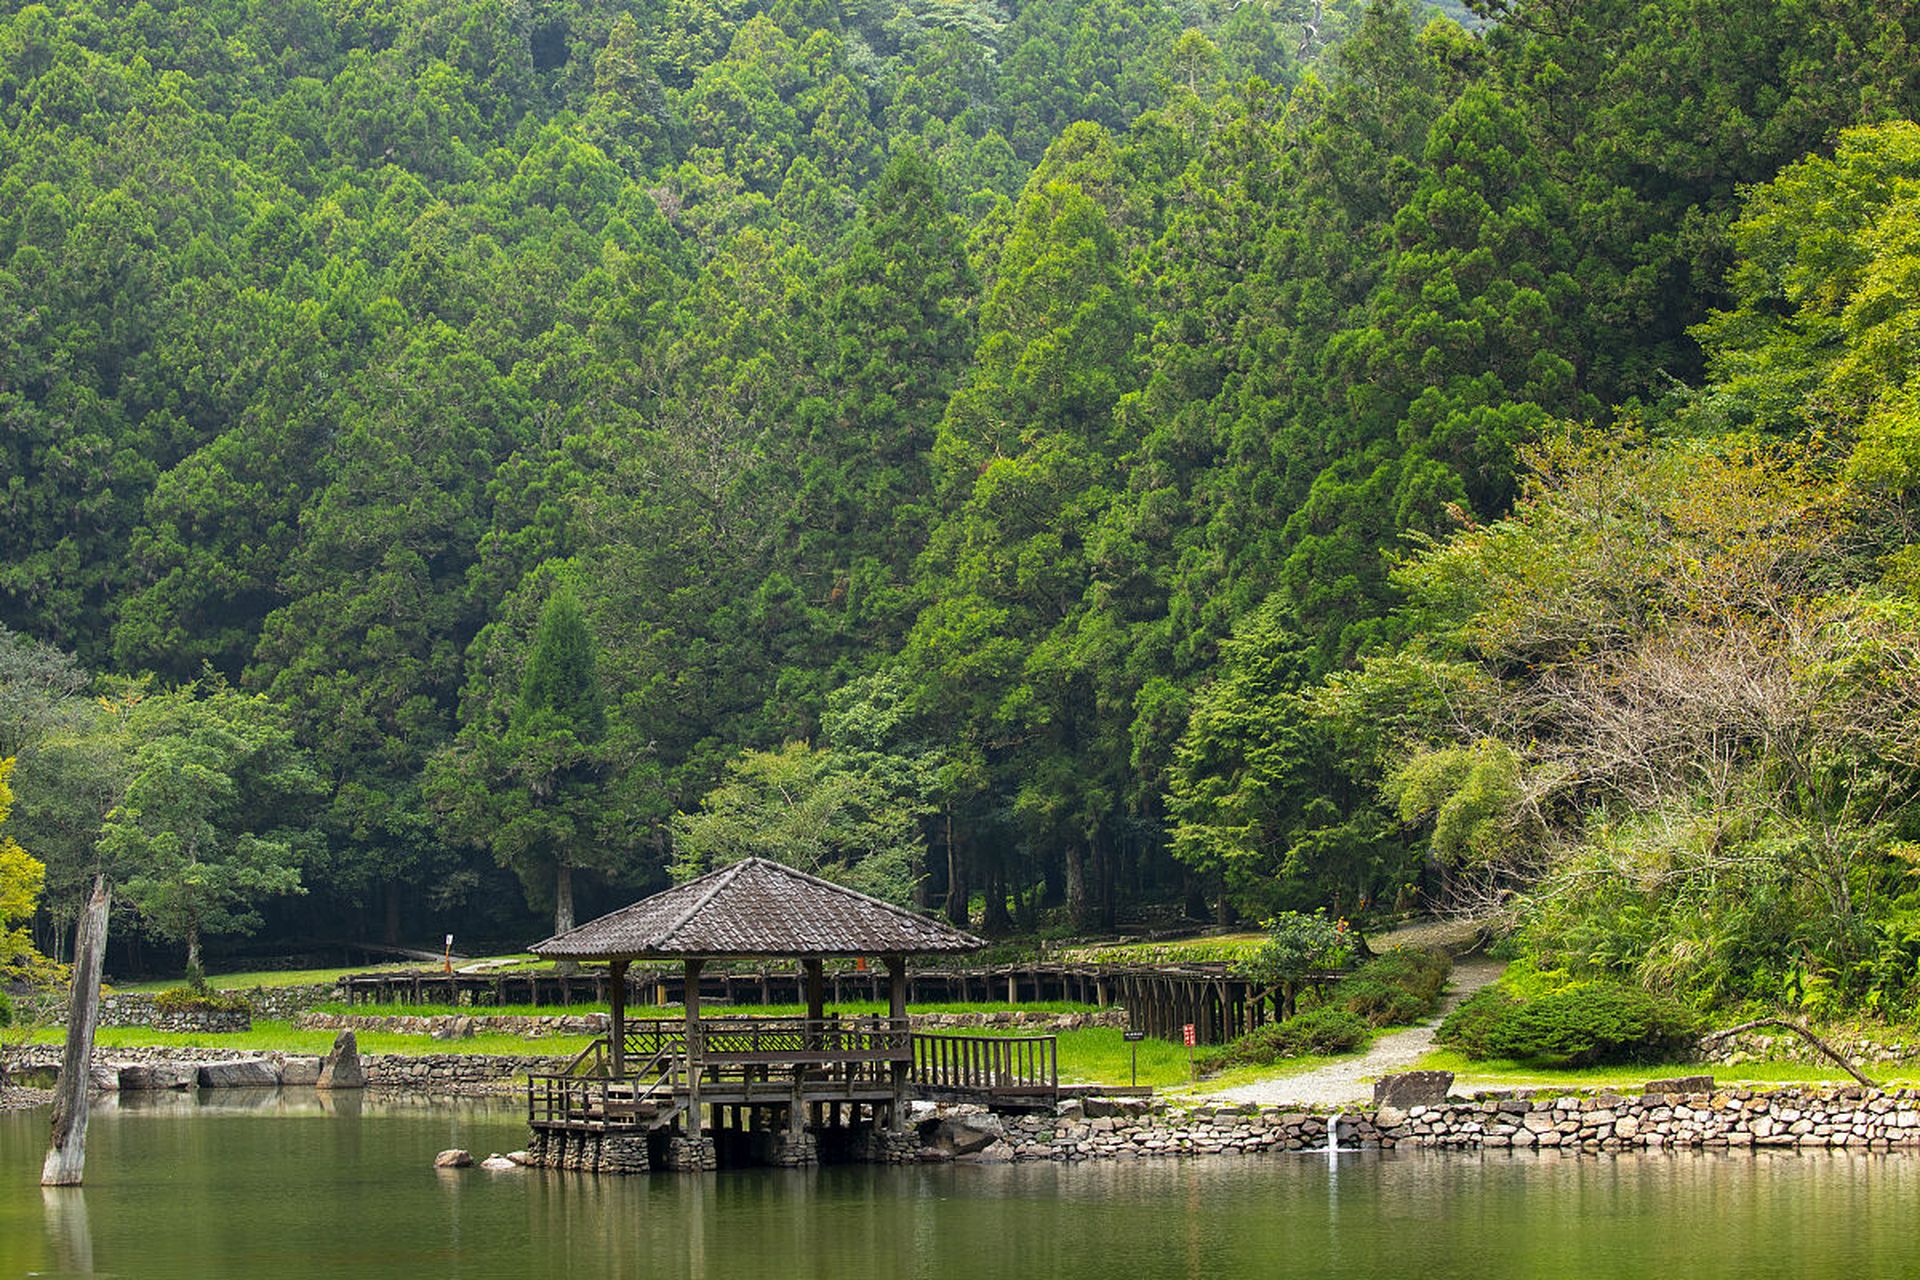 宜兴竹海风景区是一个以竹林为主题的国家aaaa级旅游区,位于江苏省